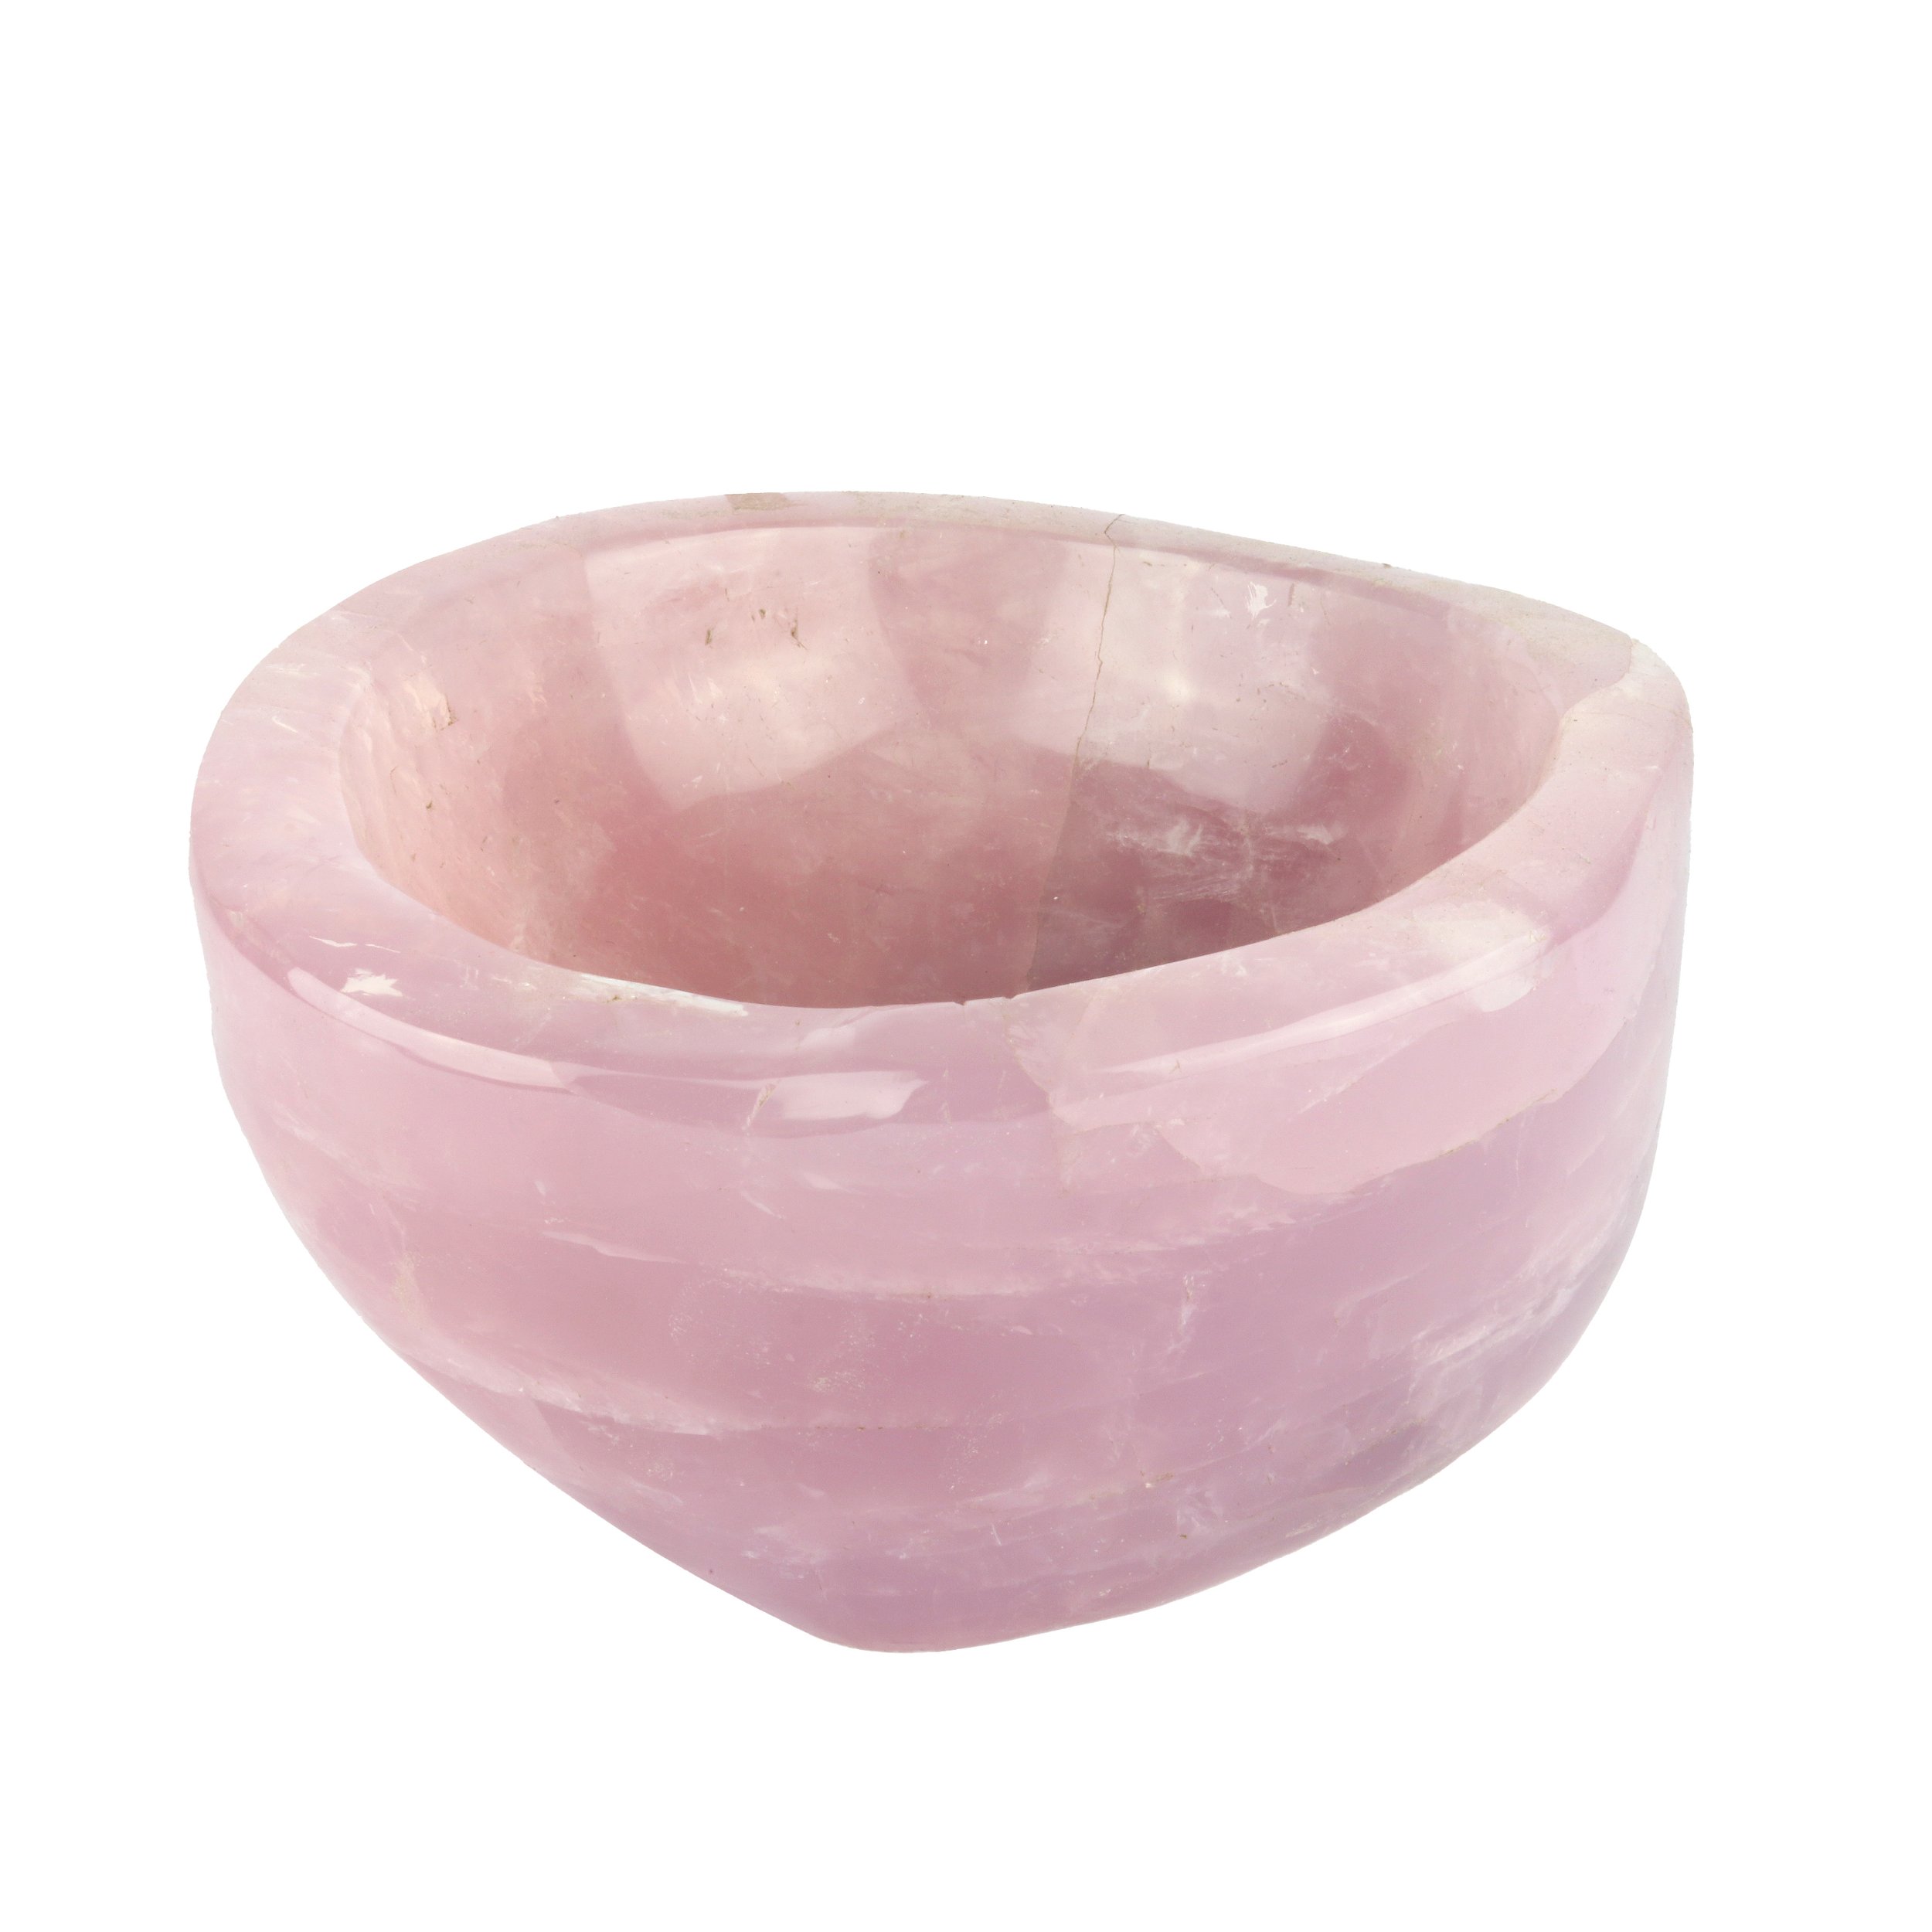 Rose Quartz Bowl -Medium